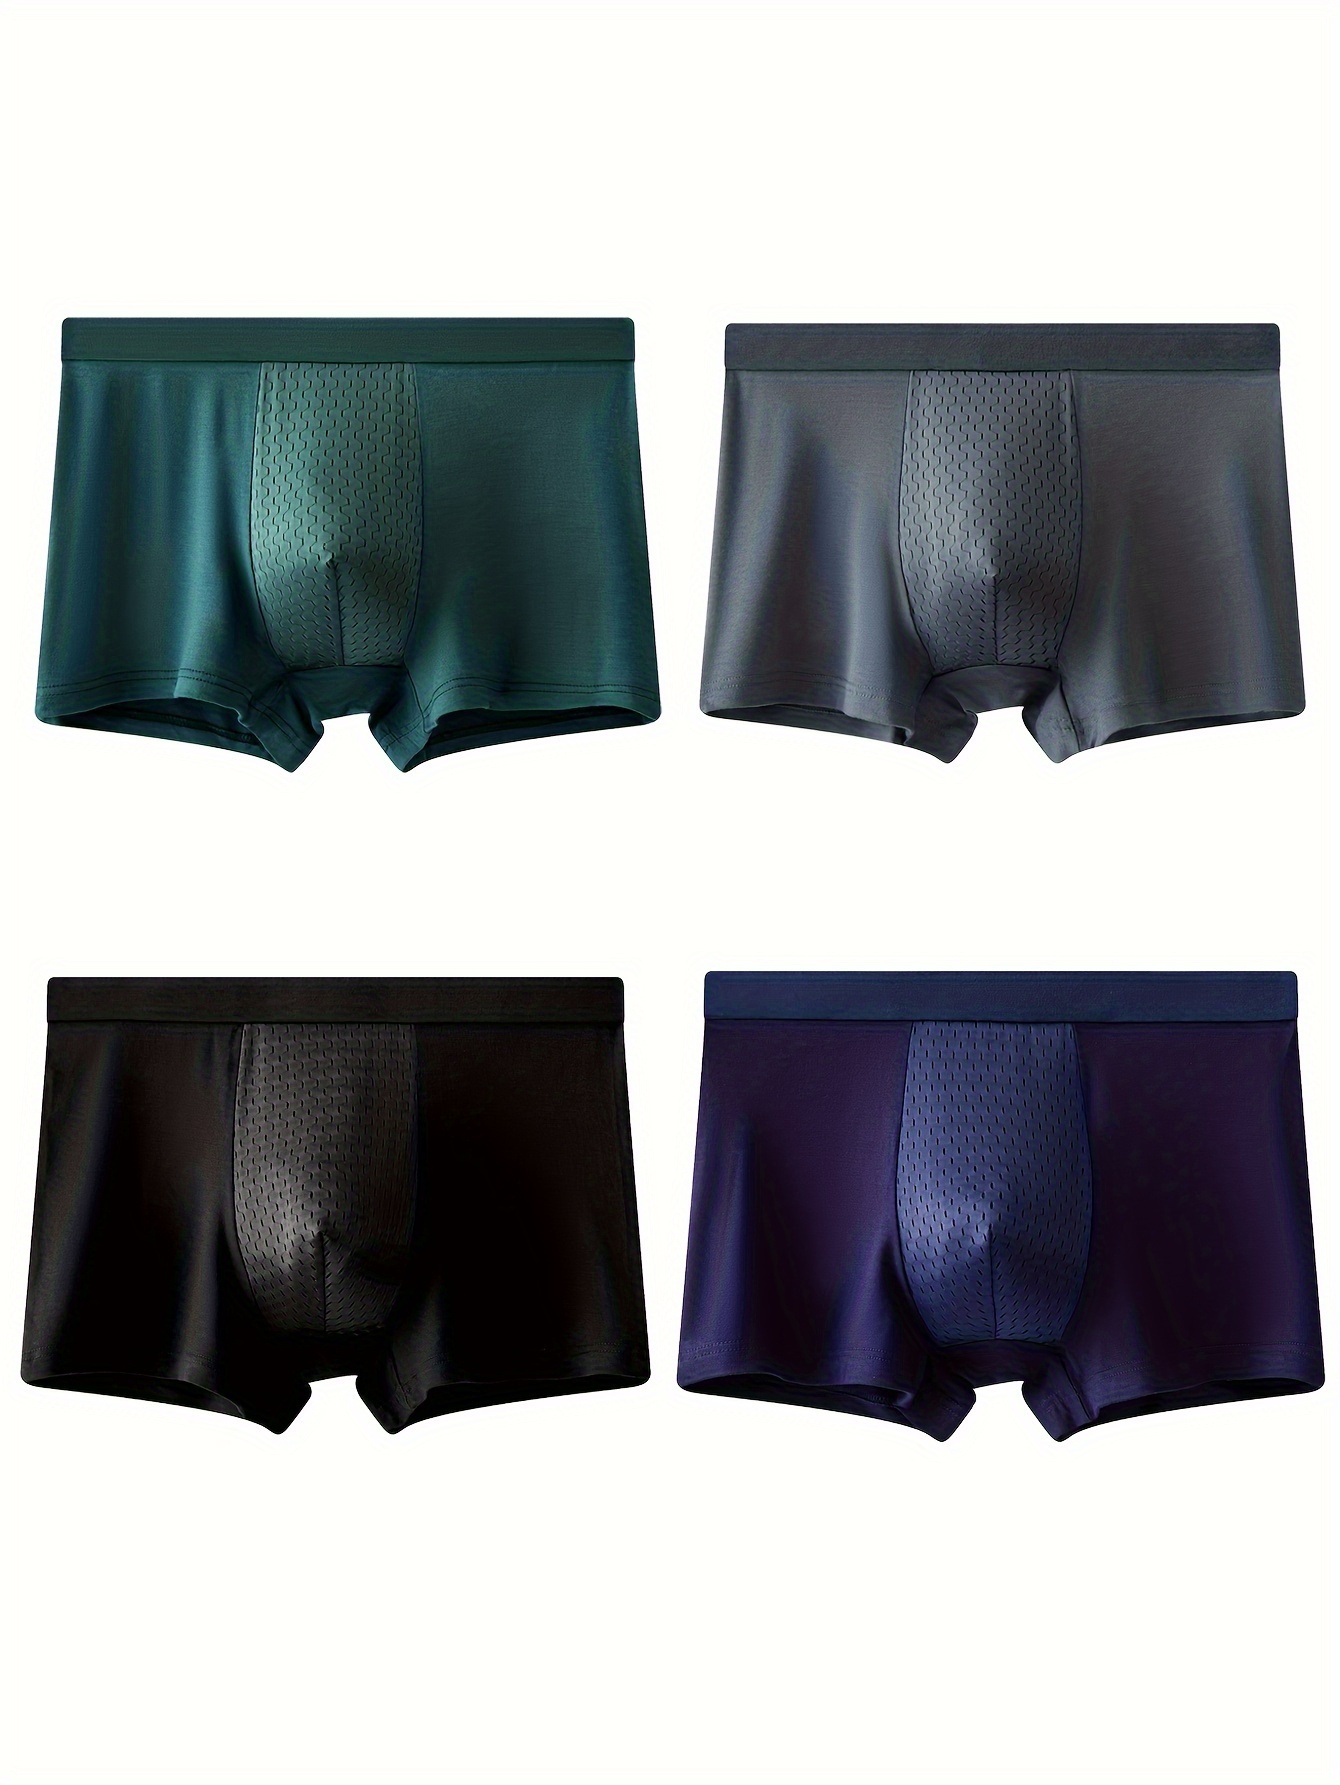 4Pcs Men's Underwear, Mesh Breathable Soft Comfy Moisture Absorption High  Stretch Pouch Boxer Briefs Shorts, Casual Plain Color Boxer Trunks